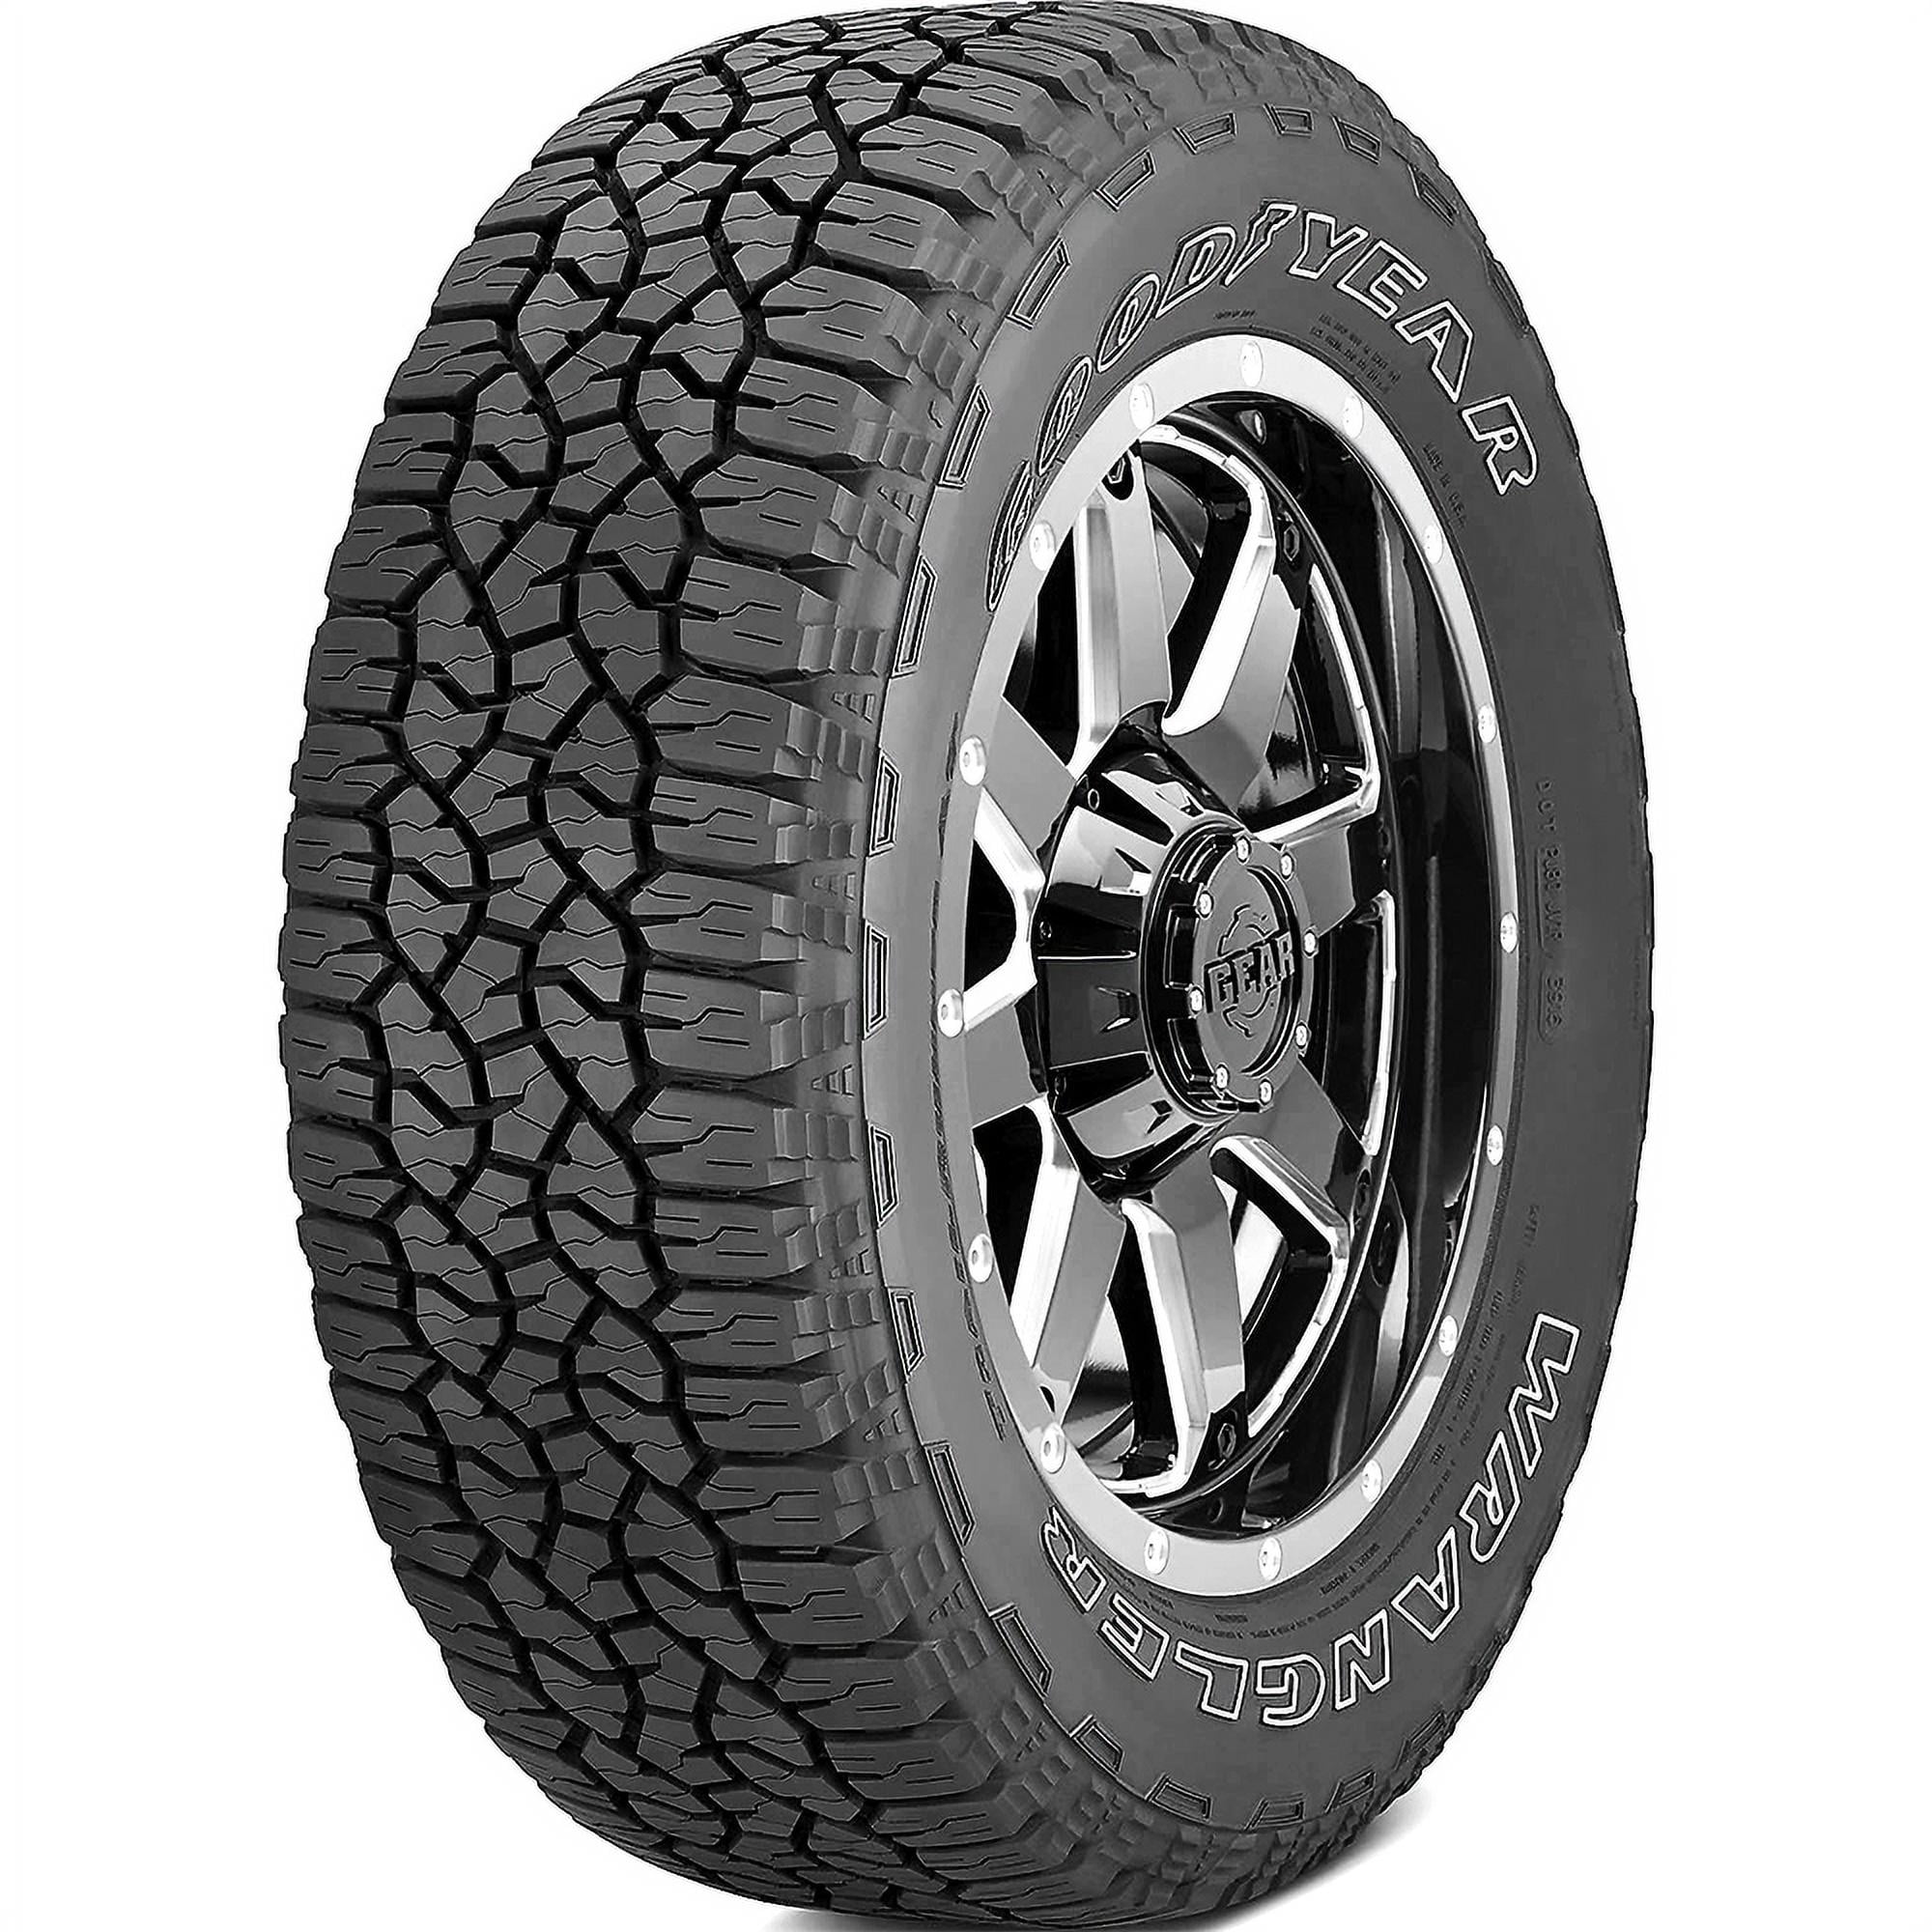 Goodyear Wrangler TrailRunner AT 285/75R16 126 R Tire 